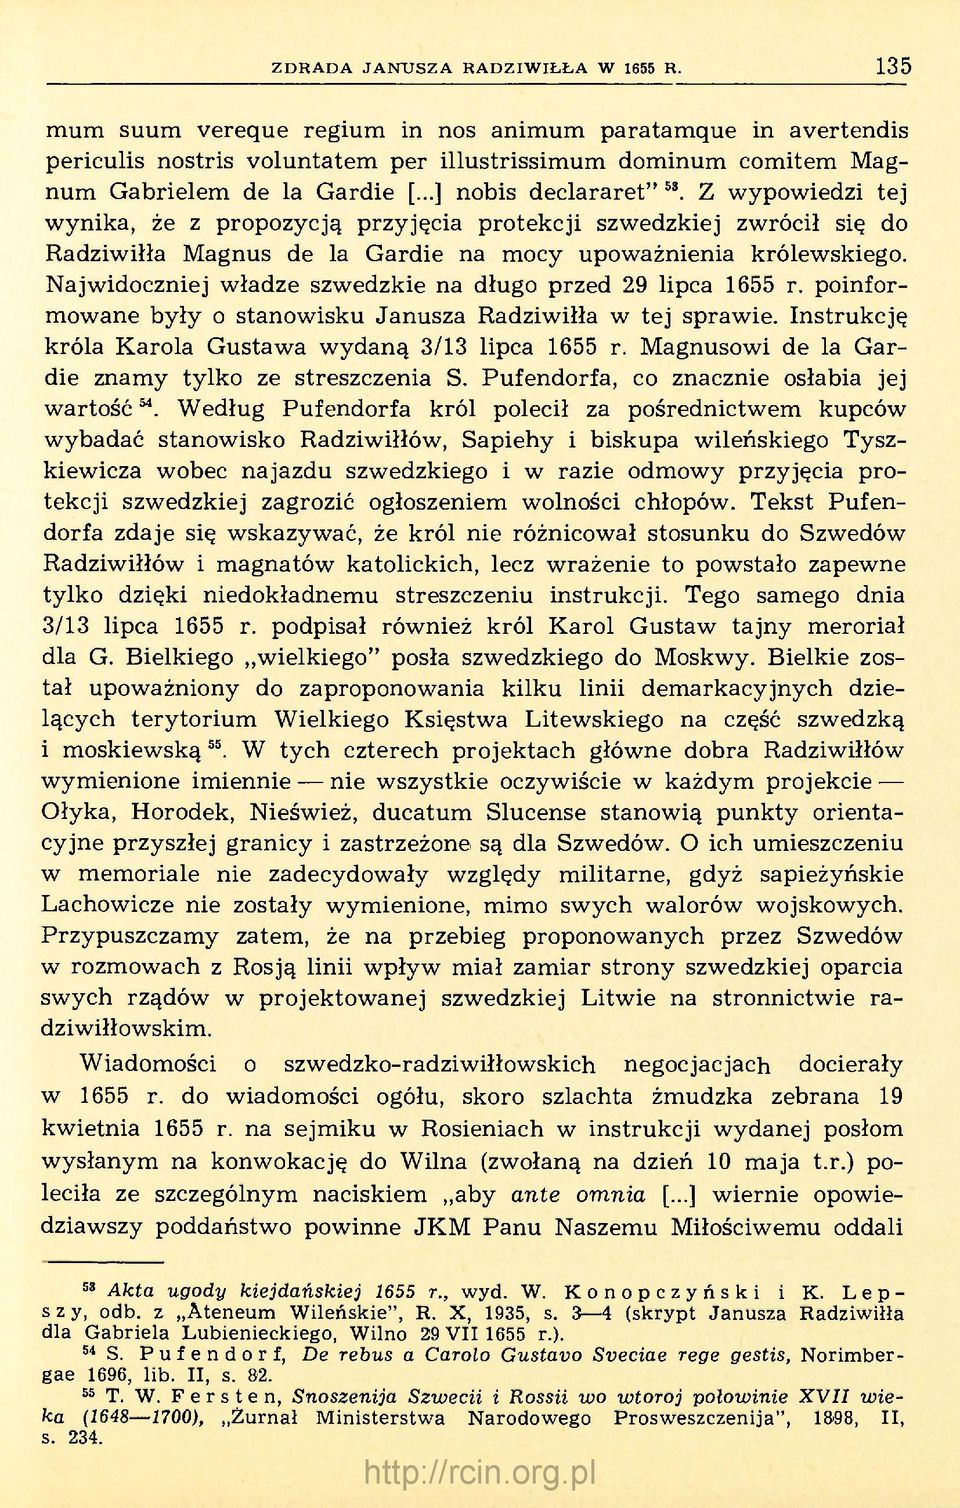 Najwidoczniej władze szwedzkie na długo przed 29 lipca 1655 r. poinformowane były o stanowisku Janusza Radziwiłła w tej sprawie. Instrukcję króla Karola Gustawa wydaną 3/13 lipca 1655 r.